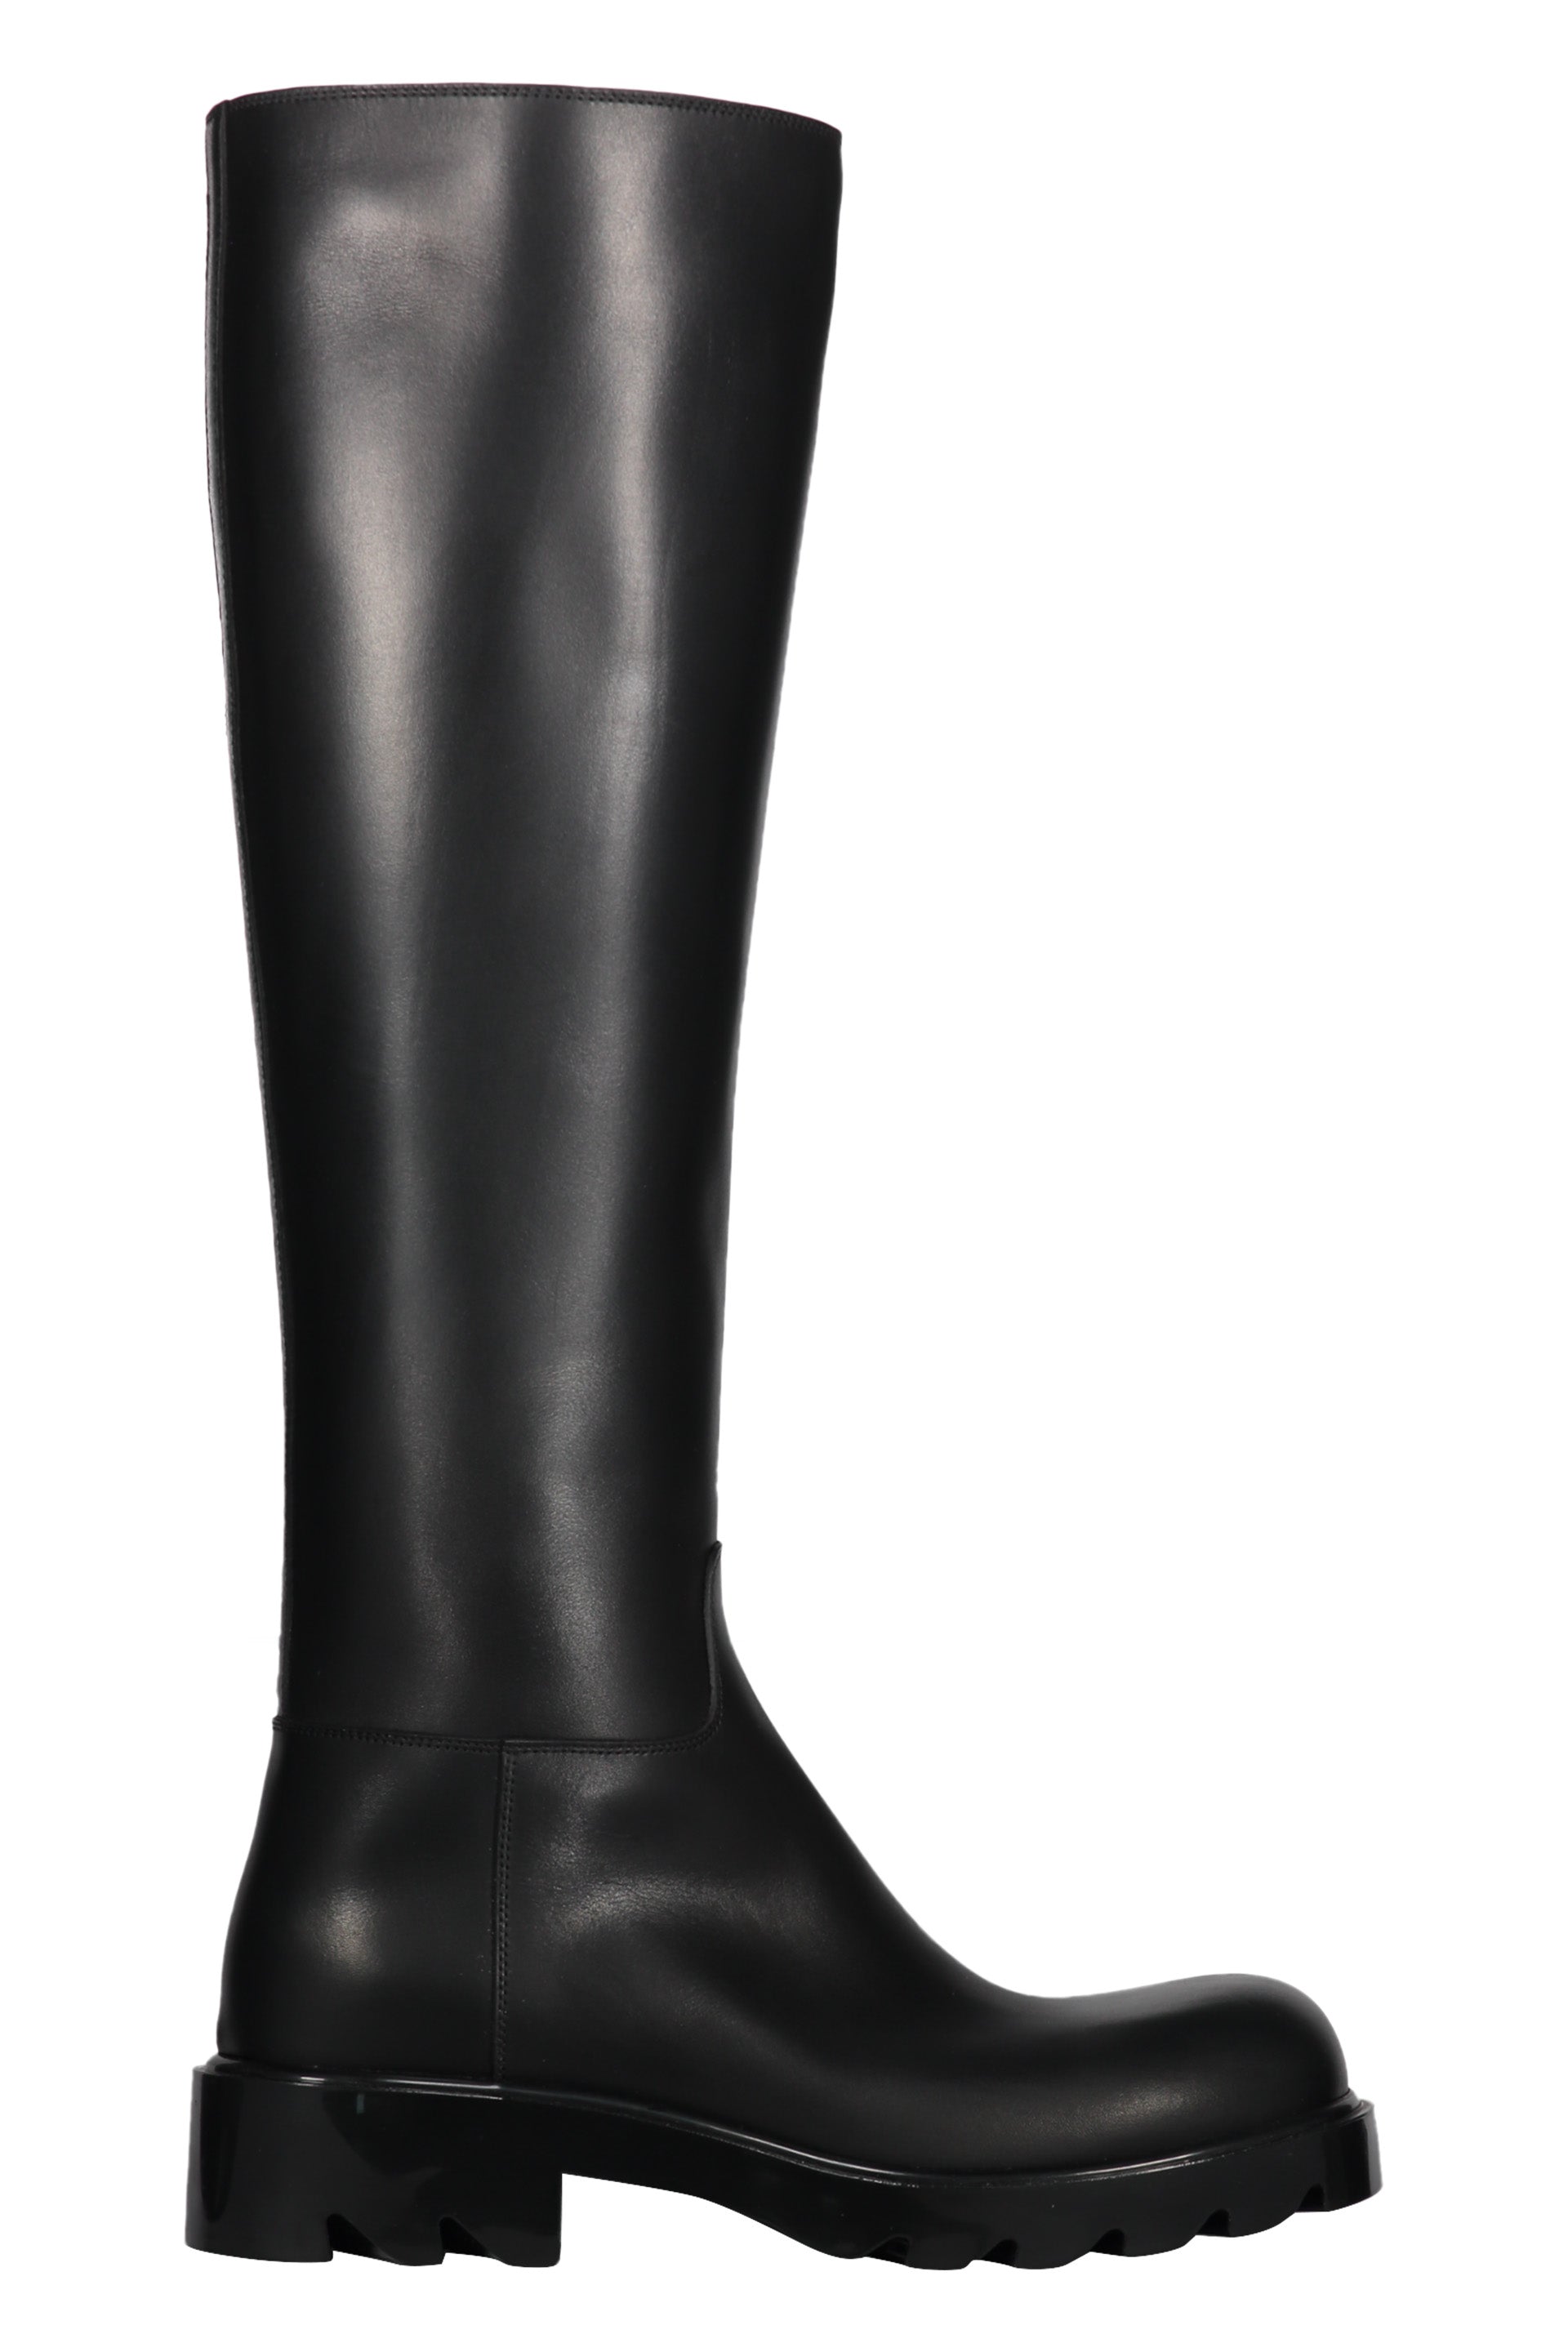 Strut leather boots-Bottega Veneta-OUTLET-SALE-ARCHIVIST